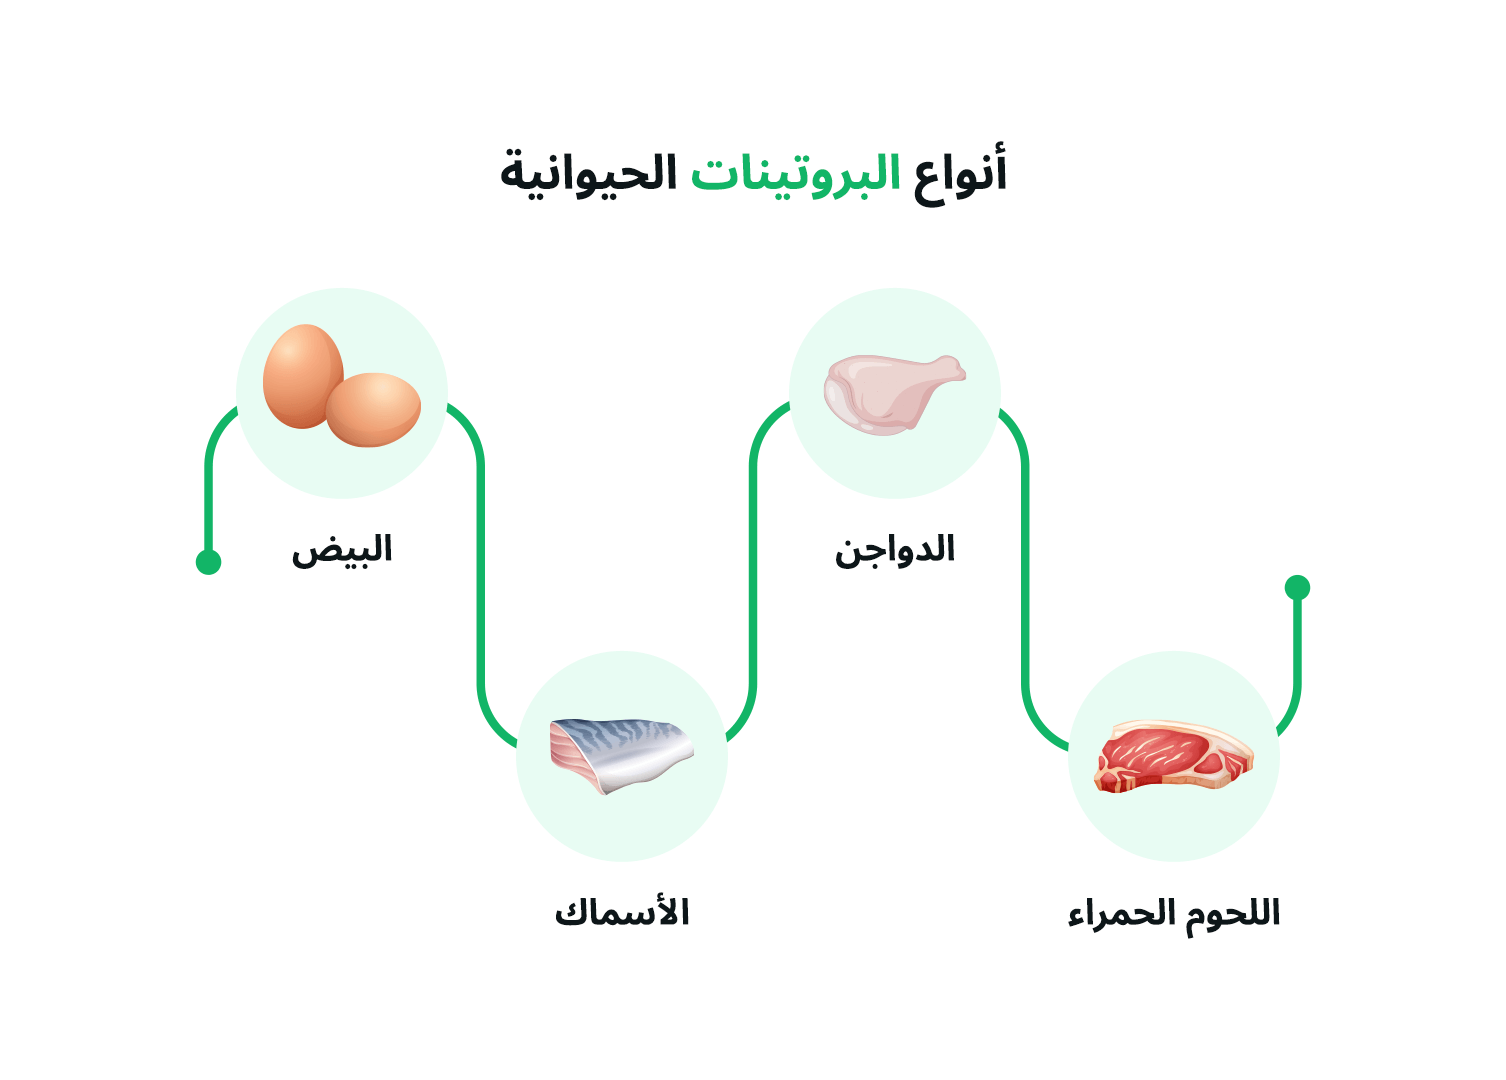 الصورة تحتوي على مخطط يوضح أنواع البروتينات الحيوانية. يتكون المخطط من أربع دوائر متصلة بخطوط، كل دائرة تحتوي على صورة لنوع من البروتينات الحيوانية واسمه باللغة العربية. الأنواع الموجودة هي: البيض، الدجاج، الأسماك، واللحوم الحمراء. العنوان الموجود في أعلى الصورة يقول "أنواع البروتينات الحيوانية". الألوان المستخدمة هادئة والتصميم بسيط وواضح.